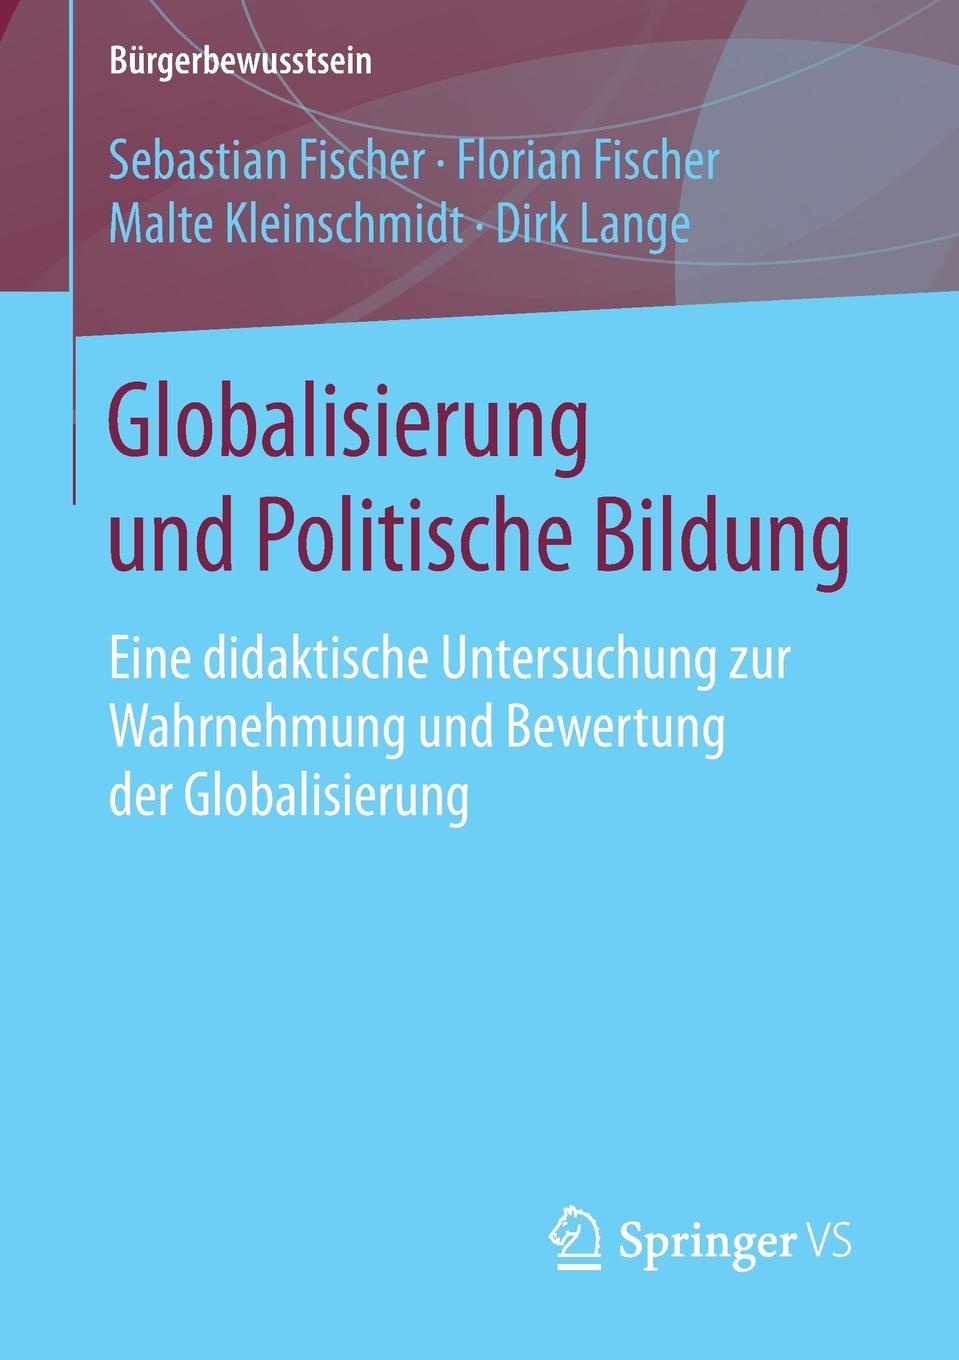 Globalisierung und Politische Bildung. Eine didaktische Untersuchung zur Wahrnehmung und Bewertung der Globalisierung